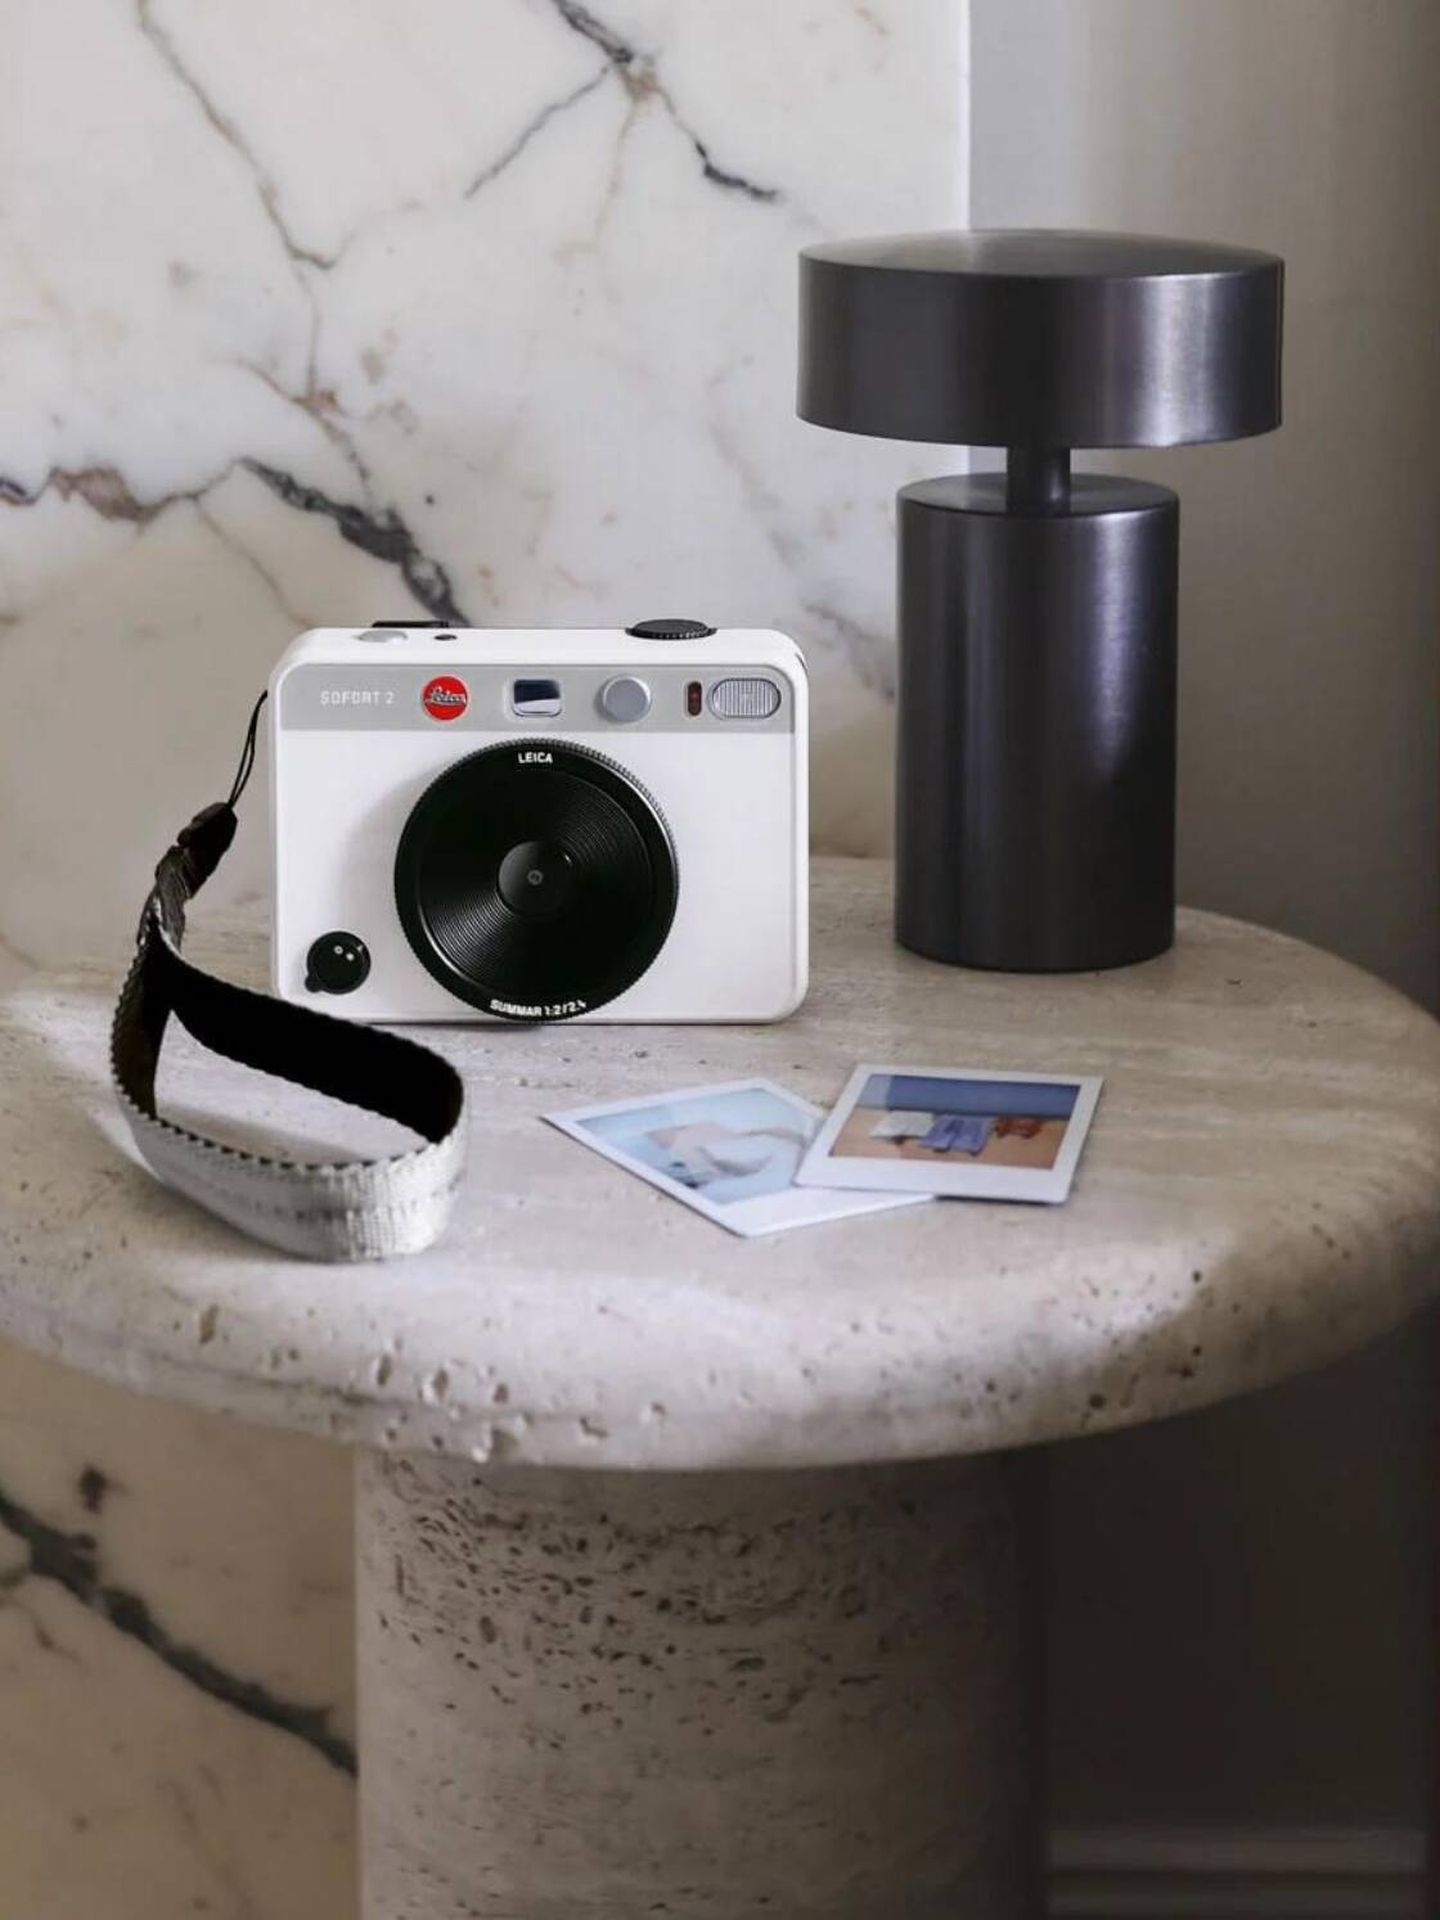 La Leica Sofort 2 es el regreso de la marca alemana a la fotografía instantánea. (Cortesía)